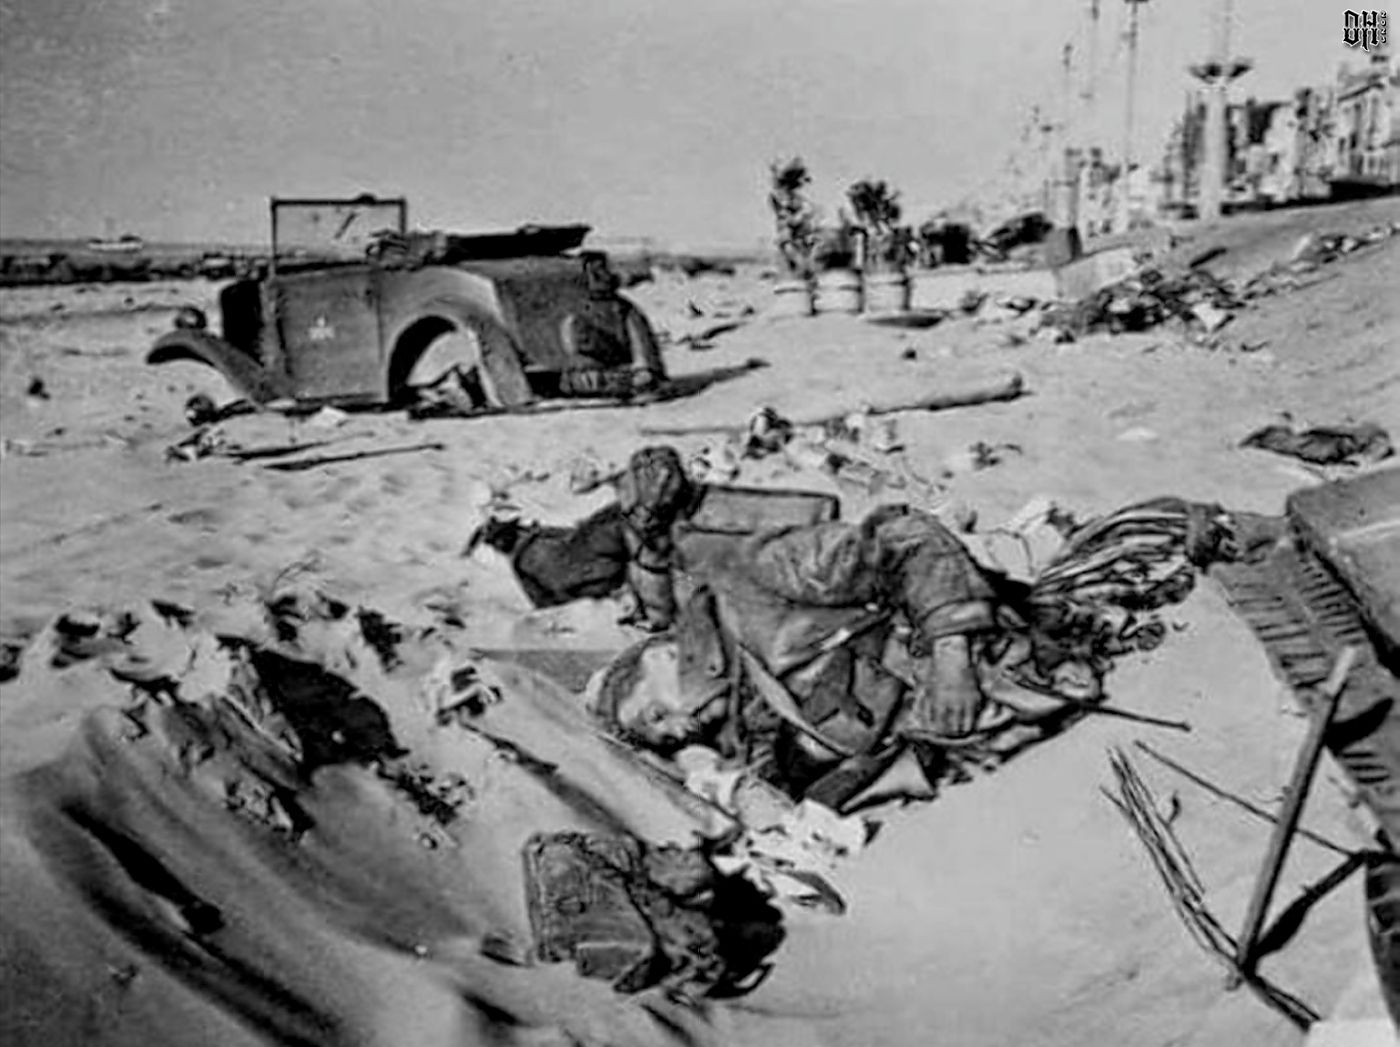 DH - WW2 Dead British Soldiers 8 - British soldier on beach at Dunkirk.jpg